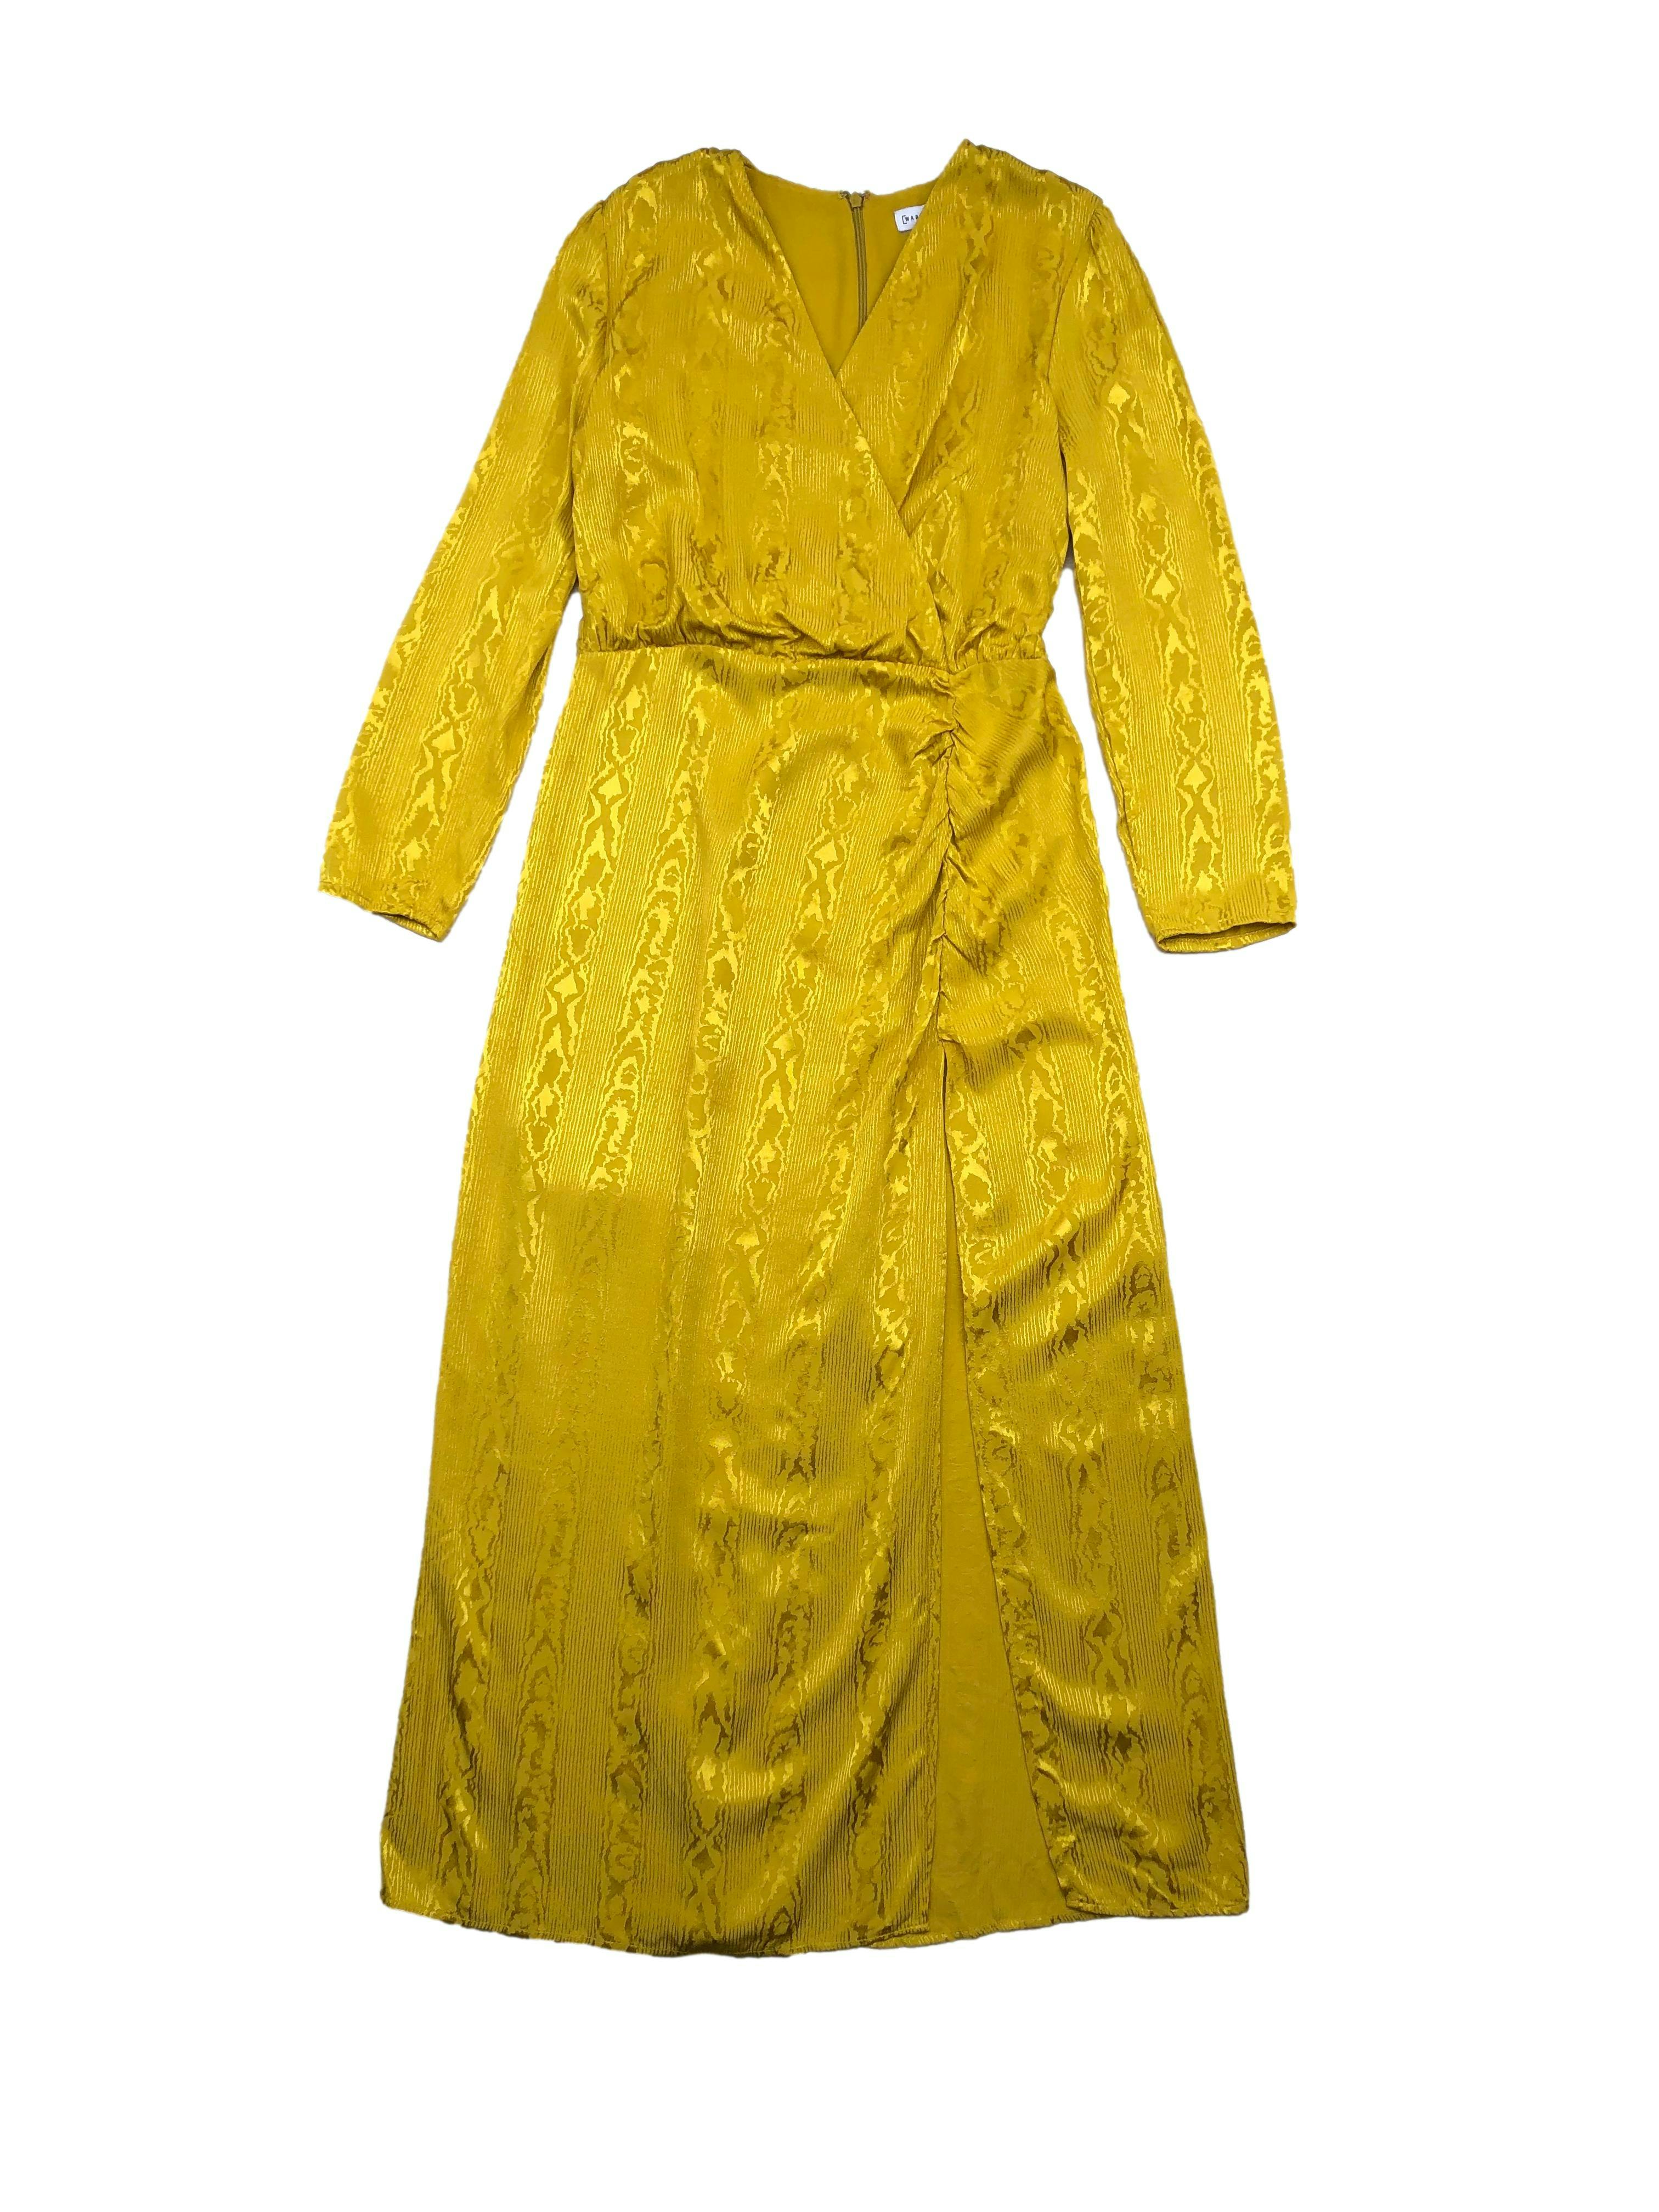 Vestido midi Warehouse amarillo con brocado satinado al tono, escote cruzado, cierre en la espalda y abertura en la pierna. Busto 100cm Cintura 80cm Largo 130cm